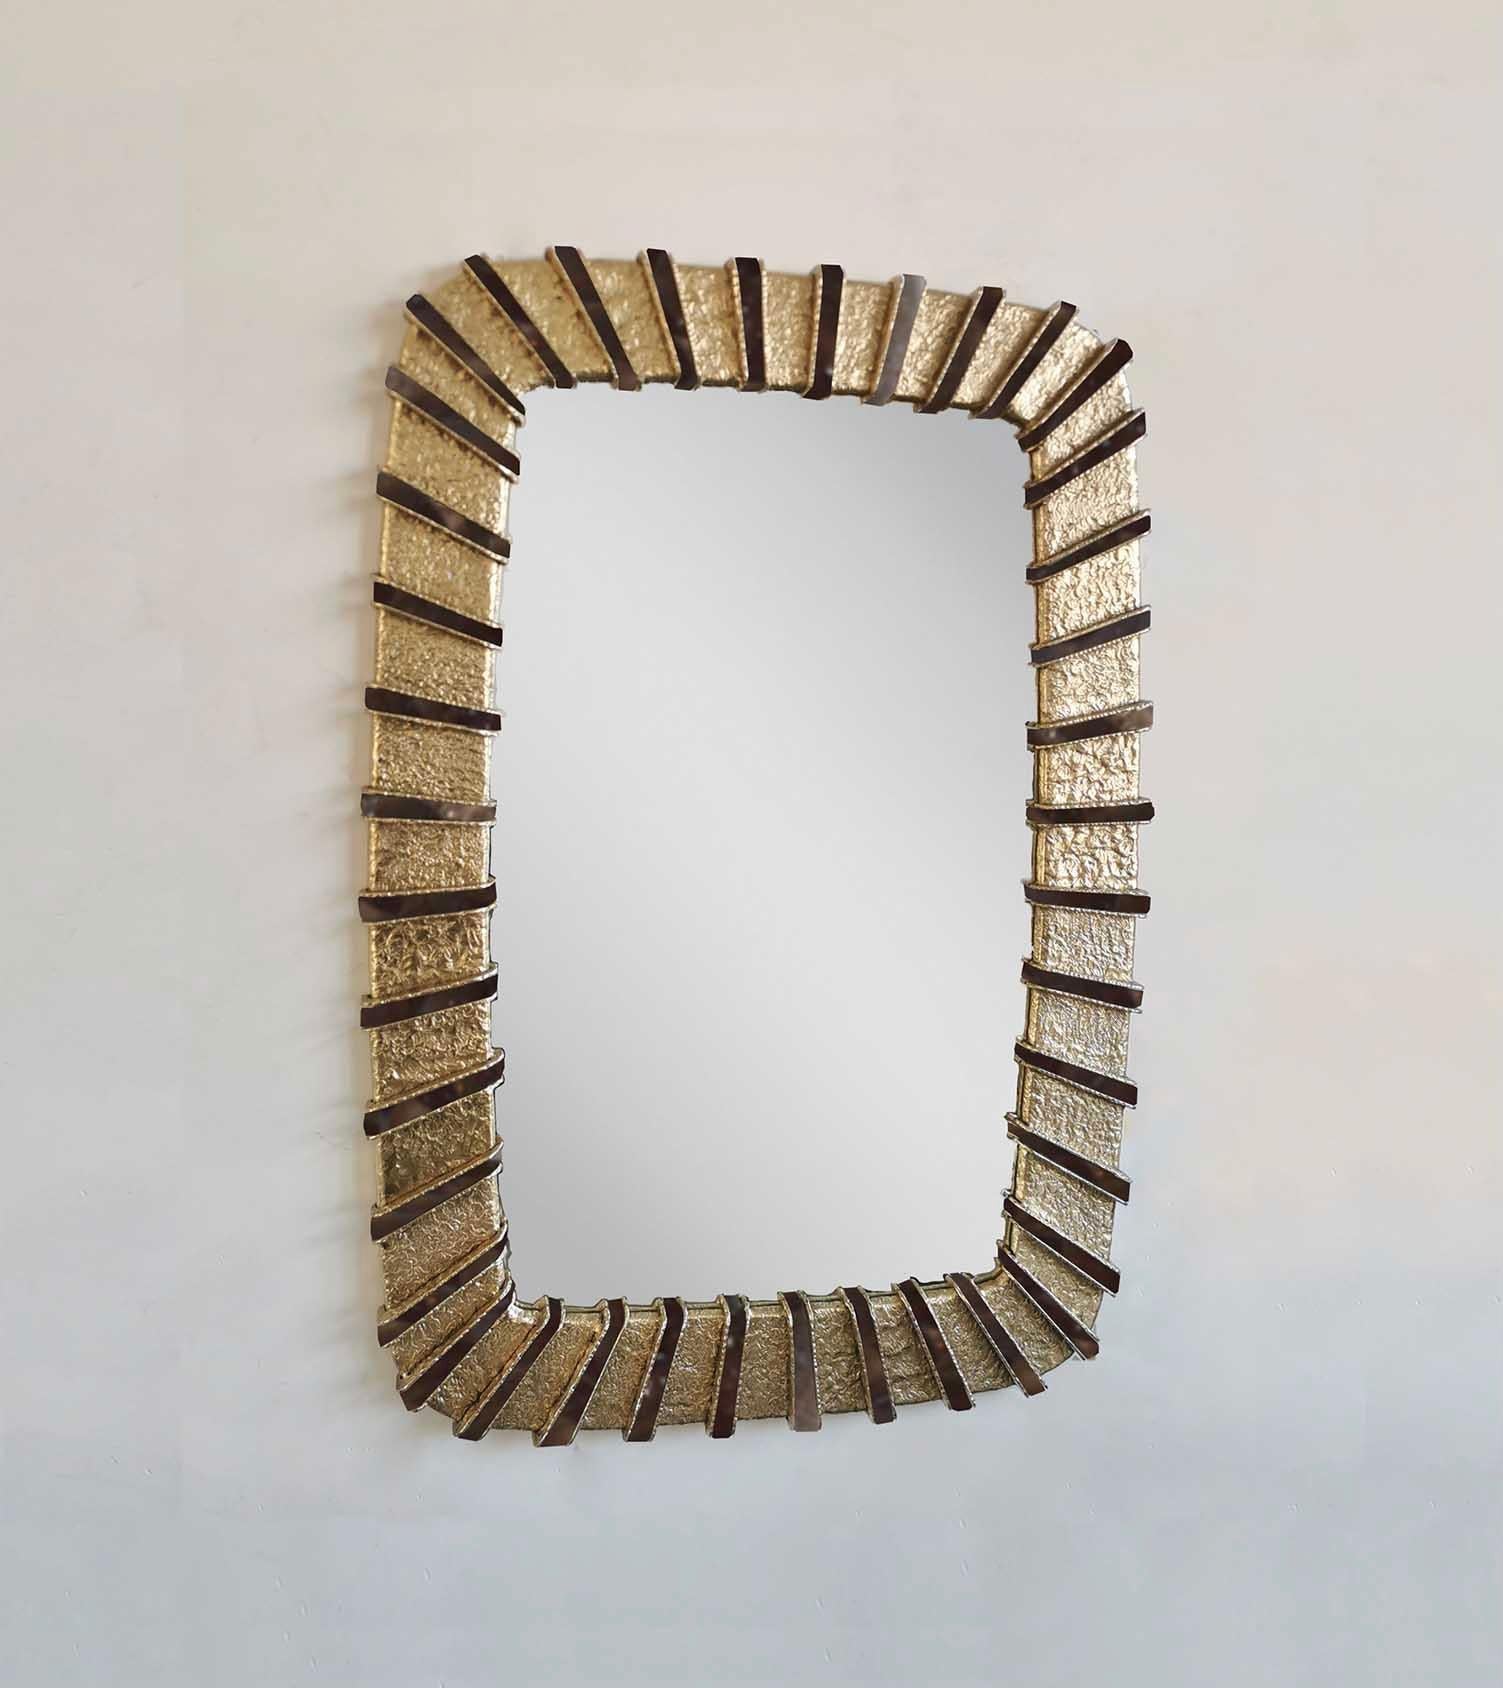 Ein Paar Soleil Spiegel mit gehämmerten Details aus Messing und rauchigen Bergkristall-Einsatz Dekorationen, kundenspezifische Größe auf Anfrage.
Erstellt von Phoenix Gallery.
  